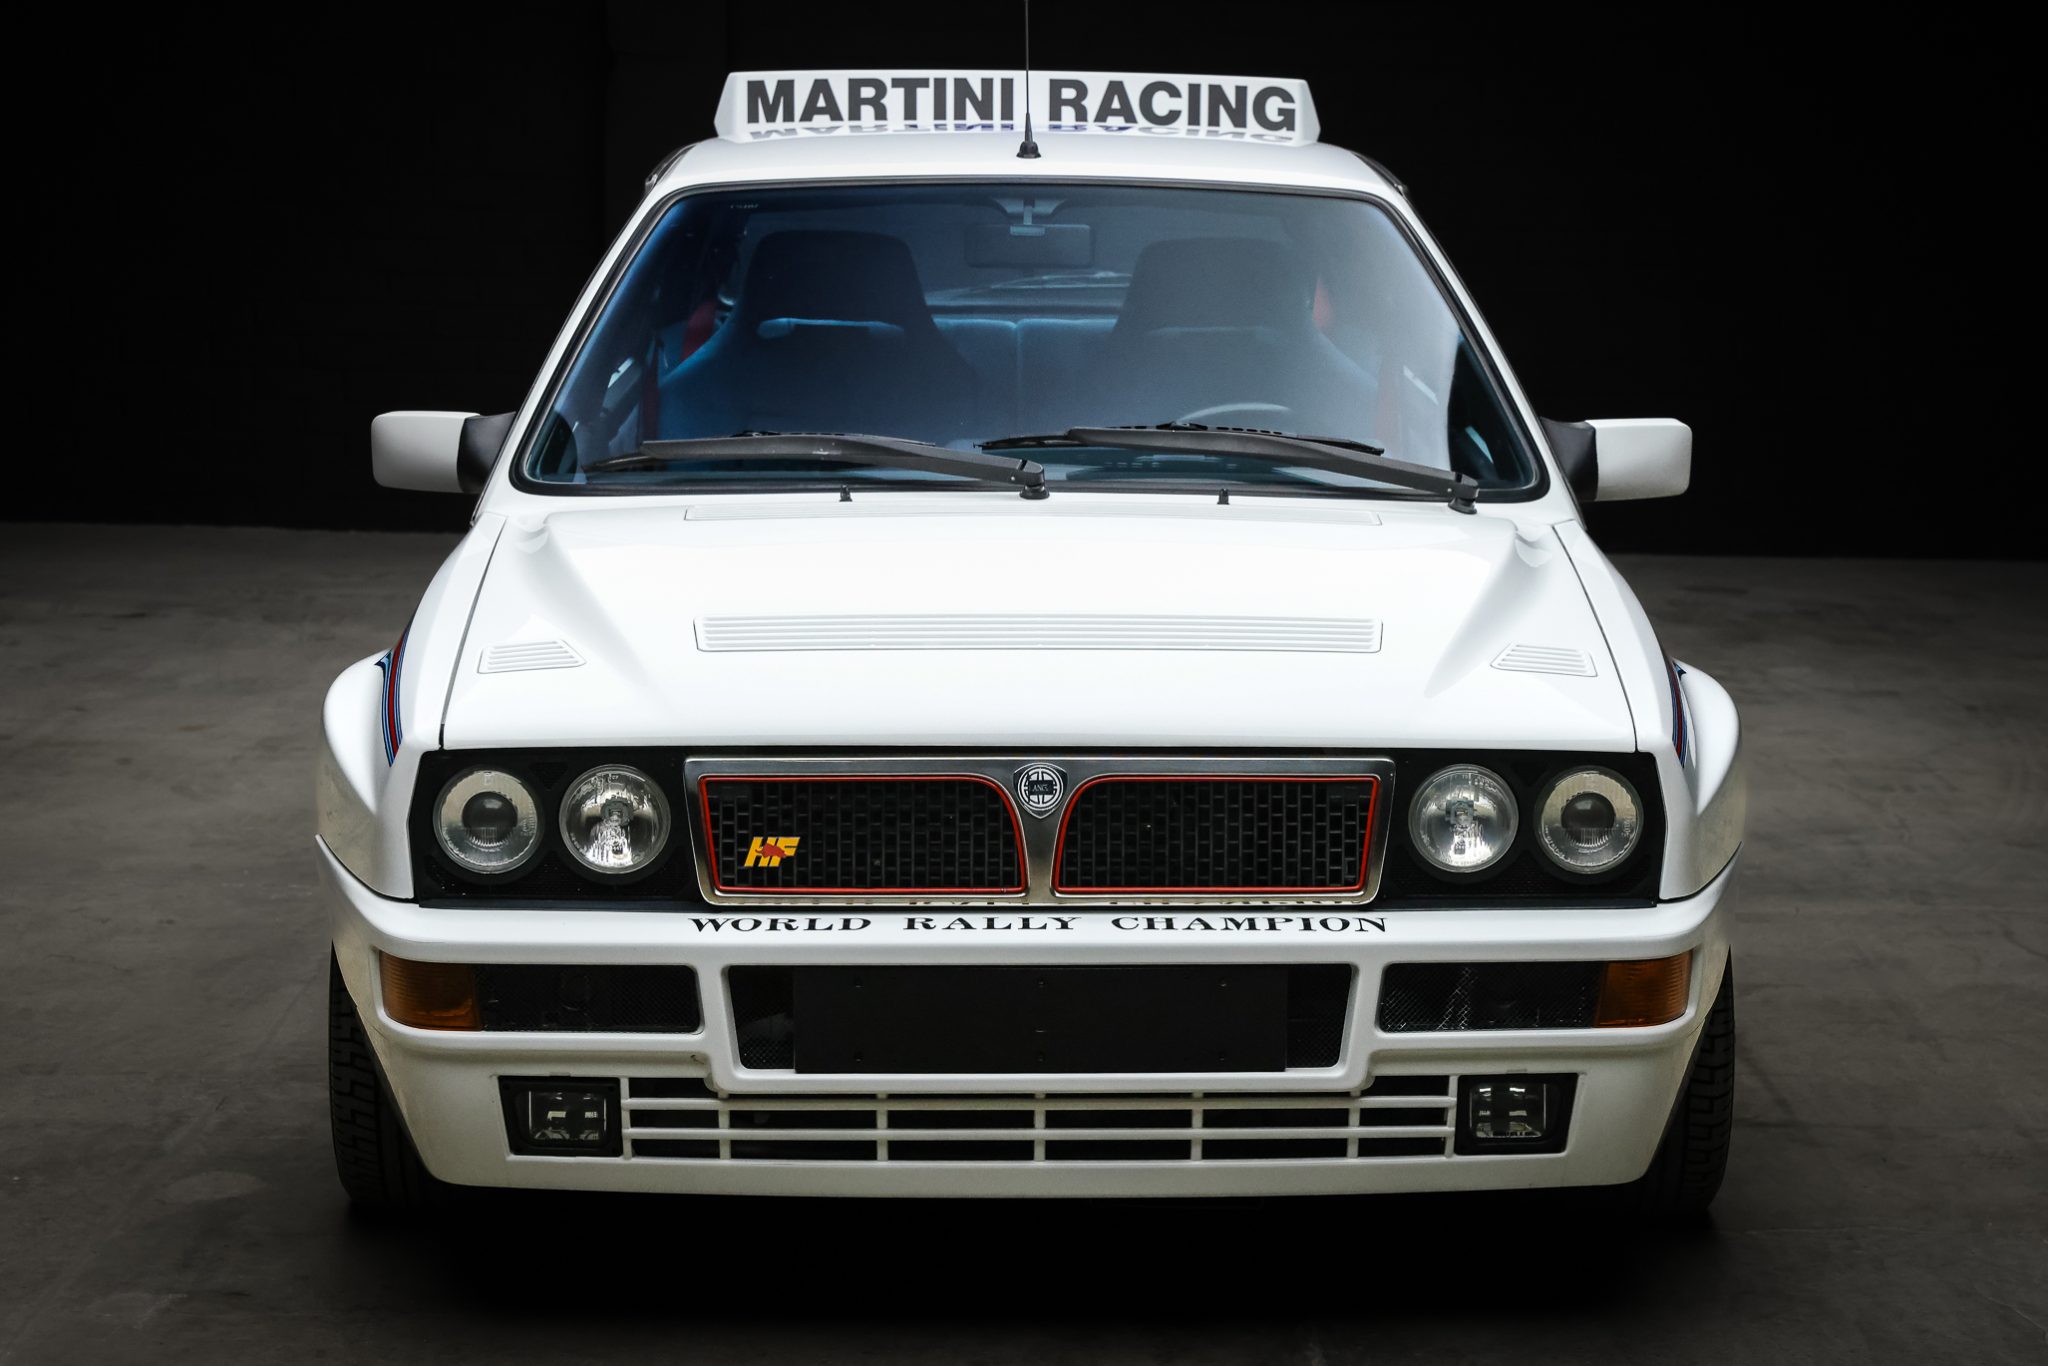 1992 Lancia Delta Integrale Martini 6 Evoluzione #272 Of 310